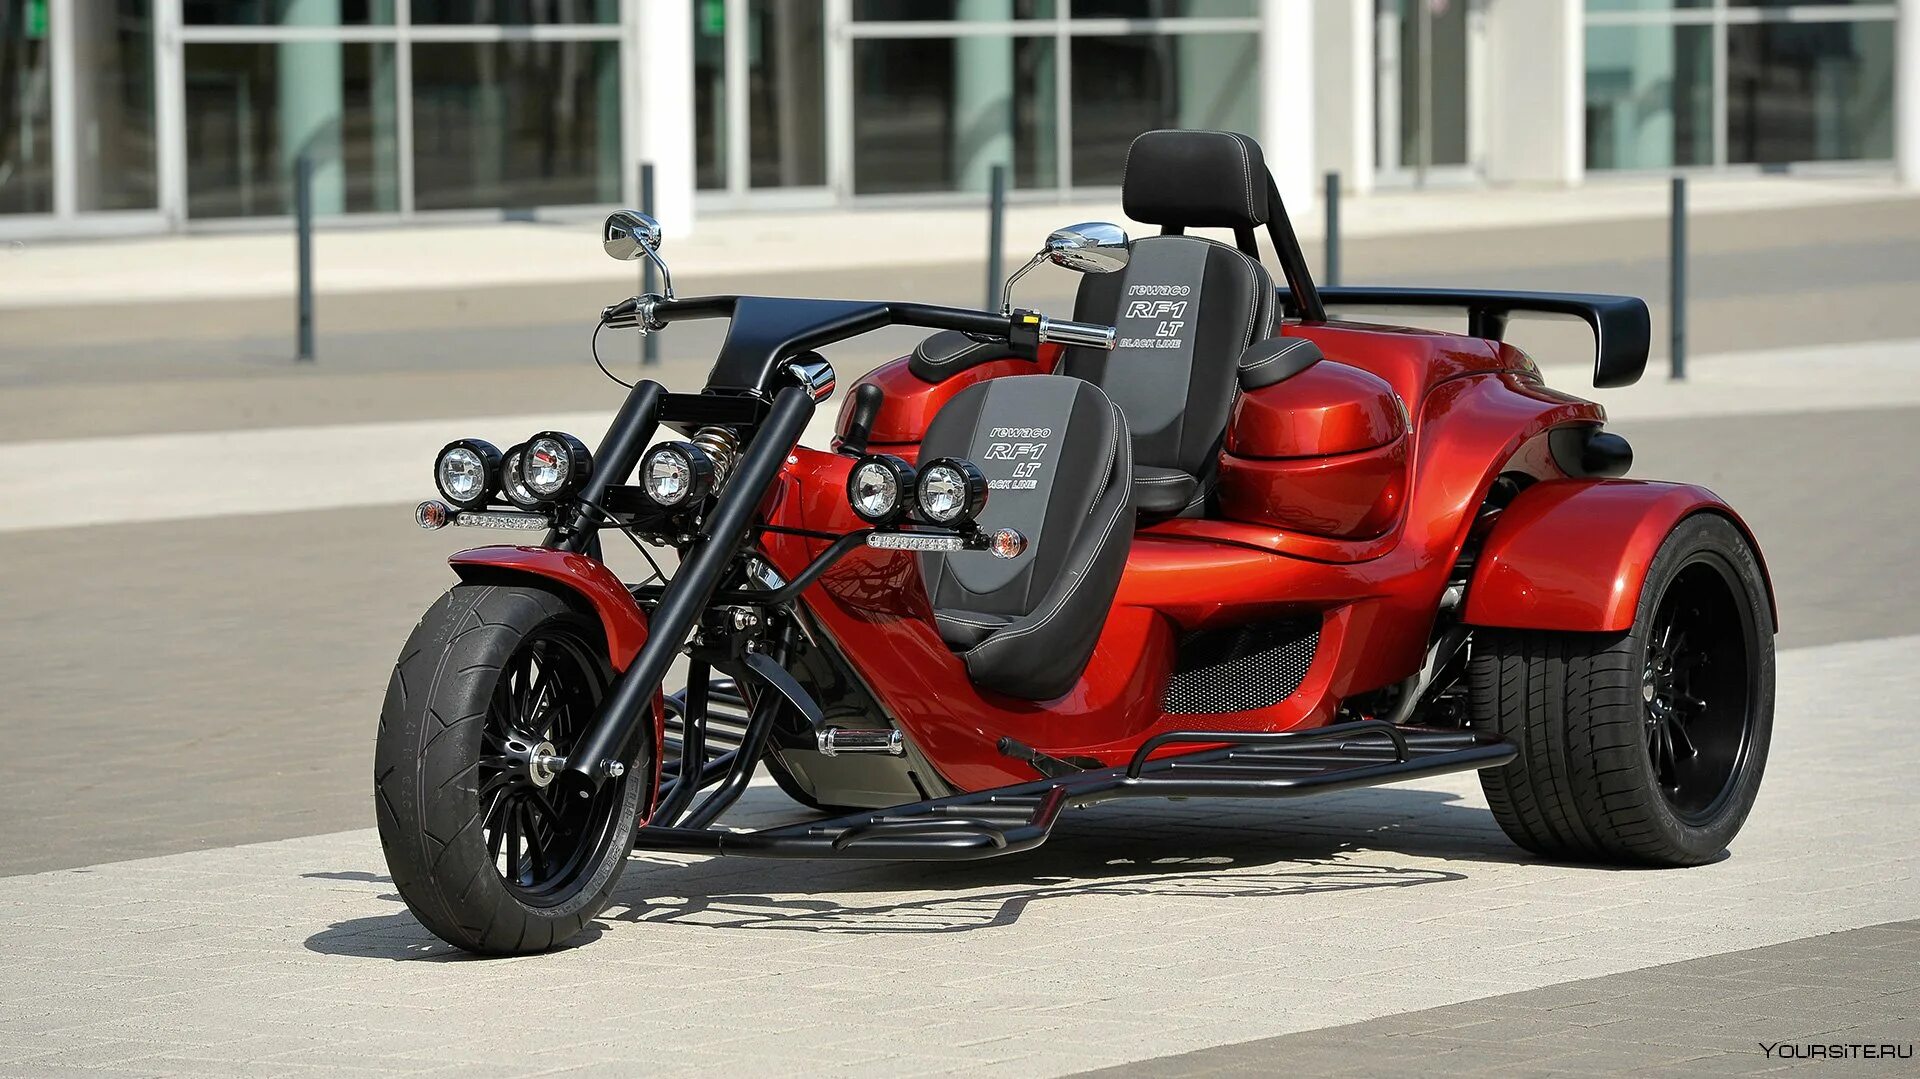 Трехколесный мотоцикл купить. Трайк Triumph Rewaco. Трёхколёсный мотоцикл Харлей Дэвидсон. Трехколесный мотоцикл БМВ. Харлей 3 колесный.